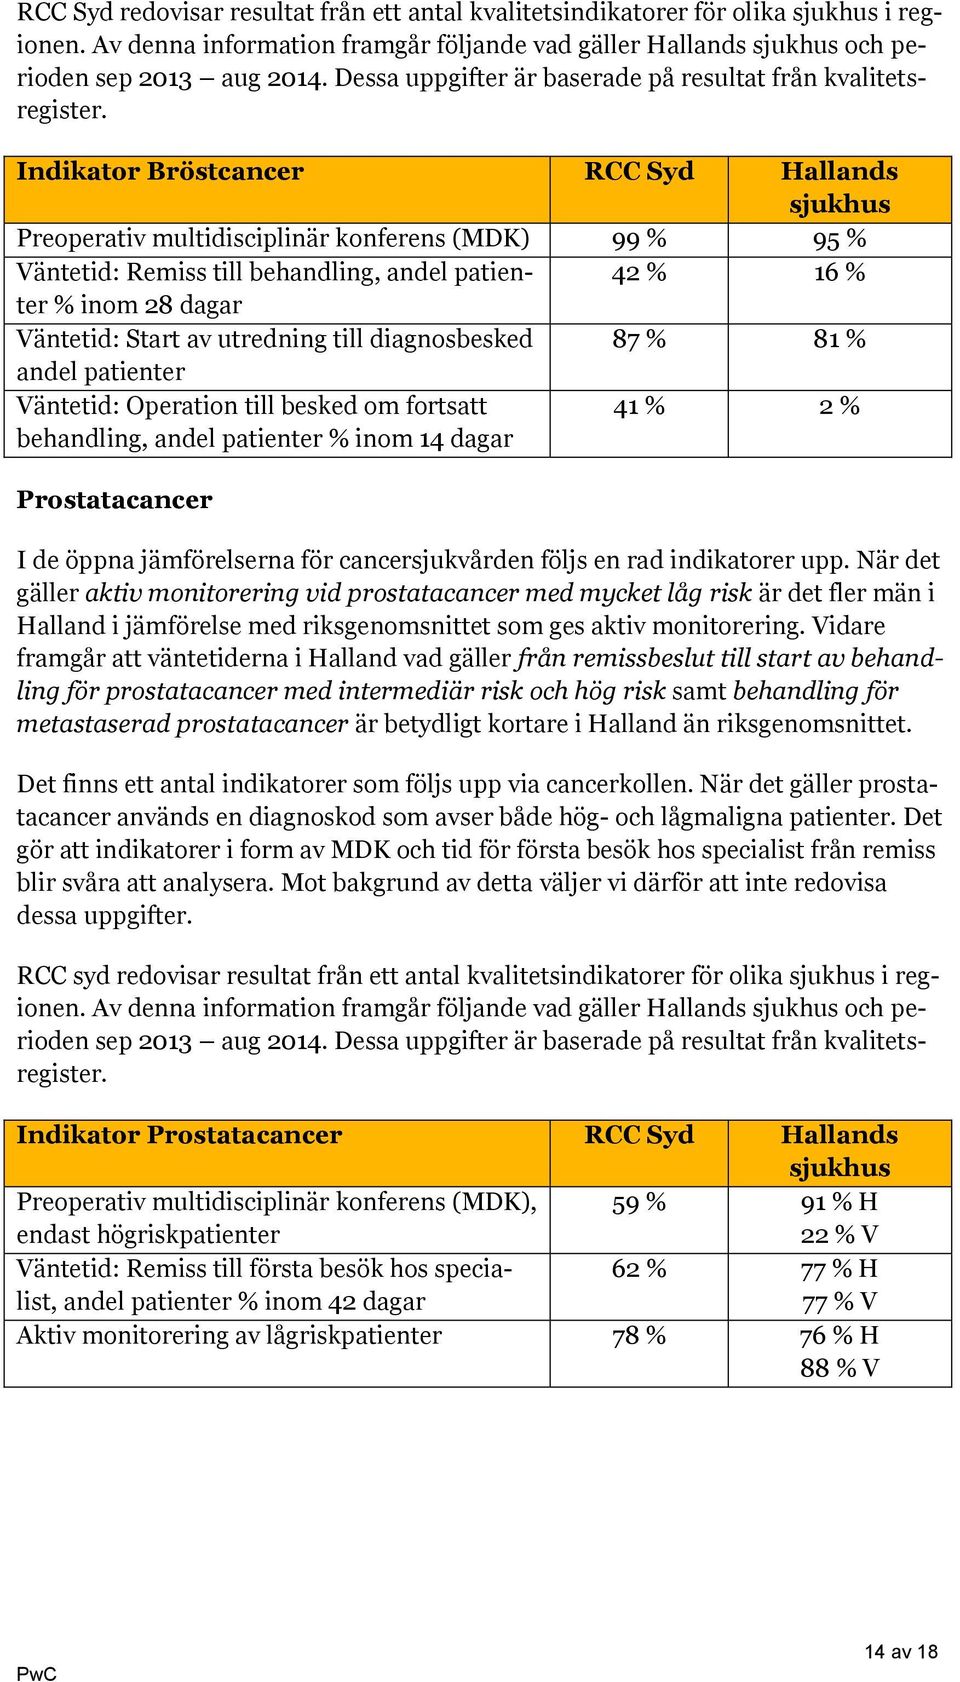 Indikator Bröstcancer RCC Syd Hallands sjukhus Preoperativ multidisciplinär konferens (MDK) 99 % 95 % Väntetid: Remiss till behandling, andel patienter 42 % 16 % % inom 28 dagar Väntetid: Start av